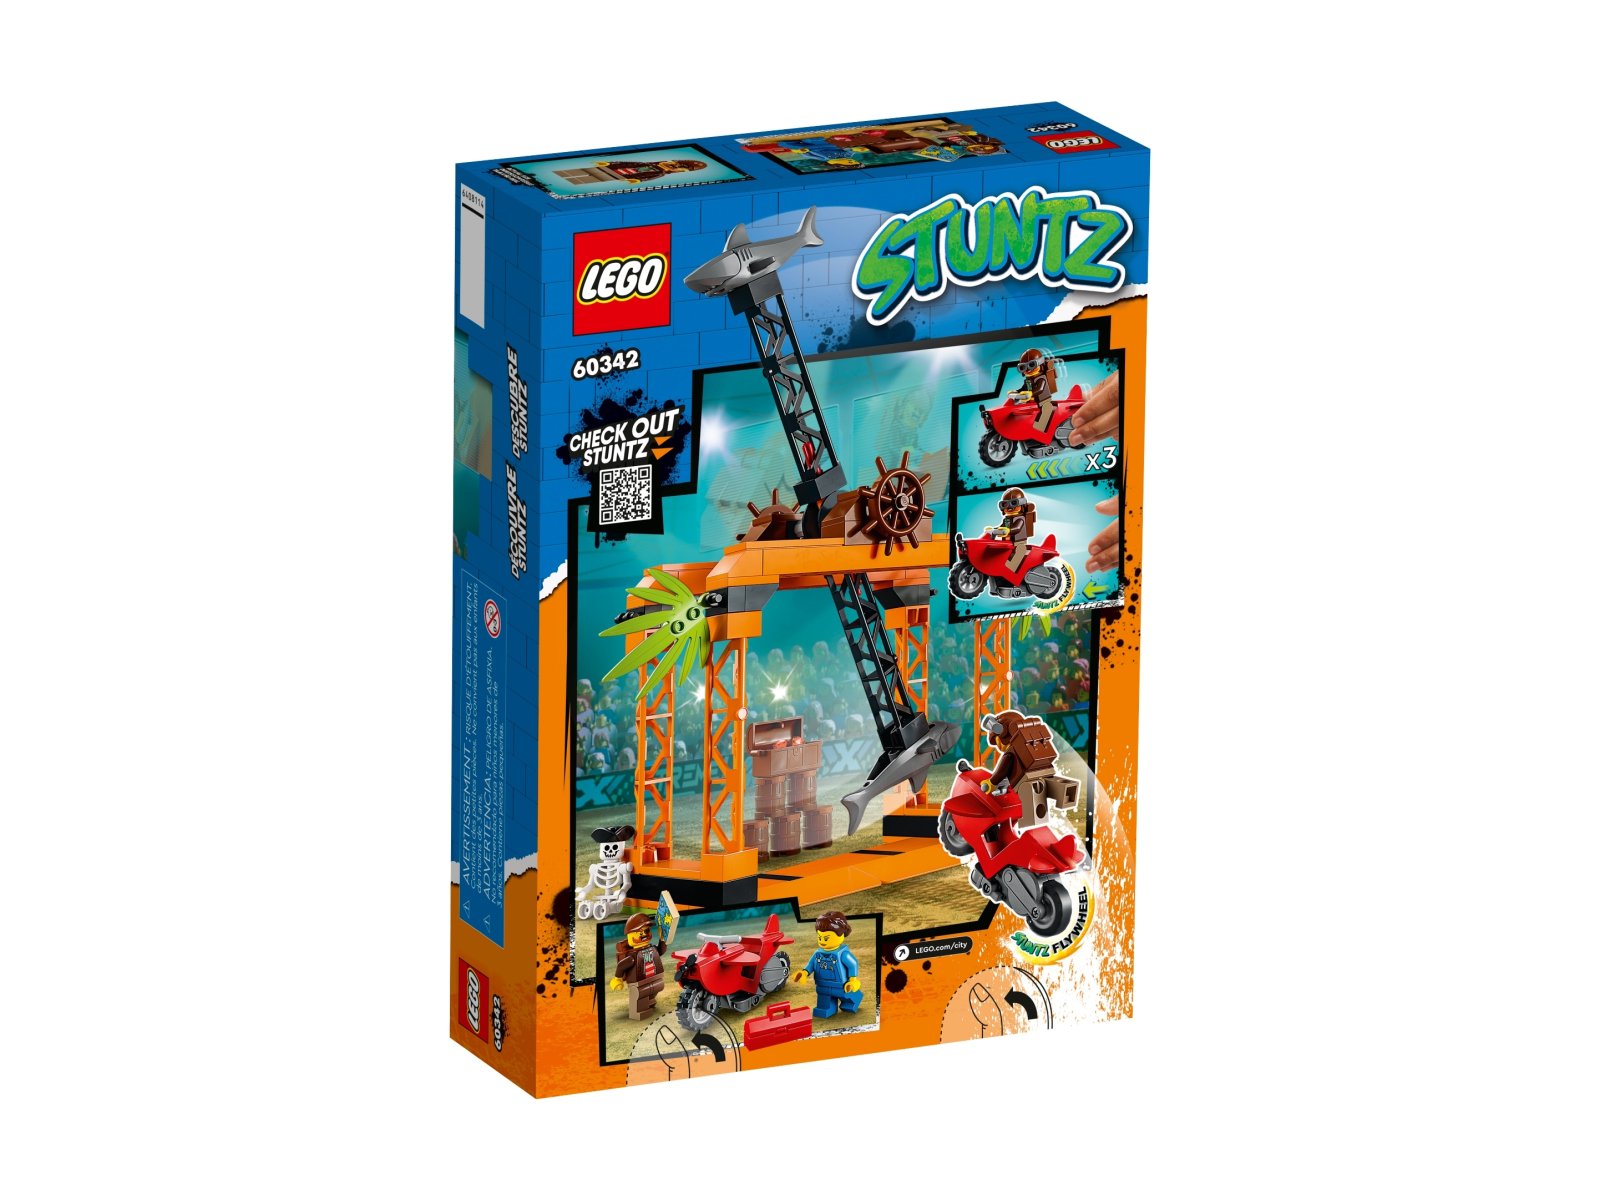 LEGO 60342 City Wyzwanie kaskaderskie: atak rekina